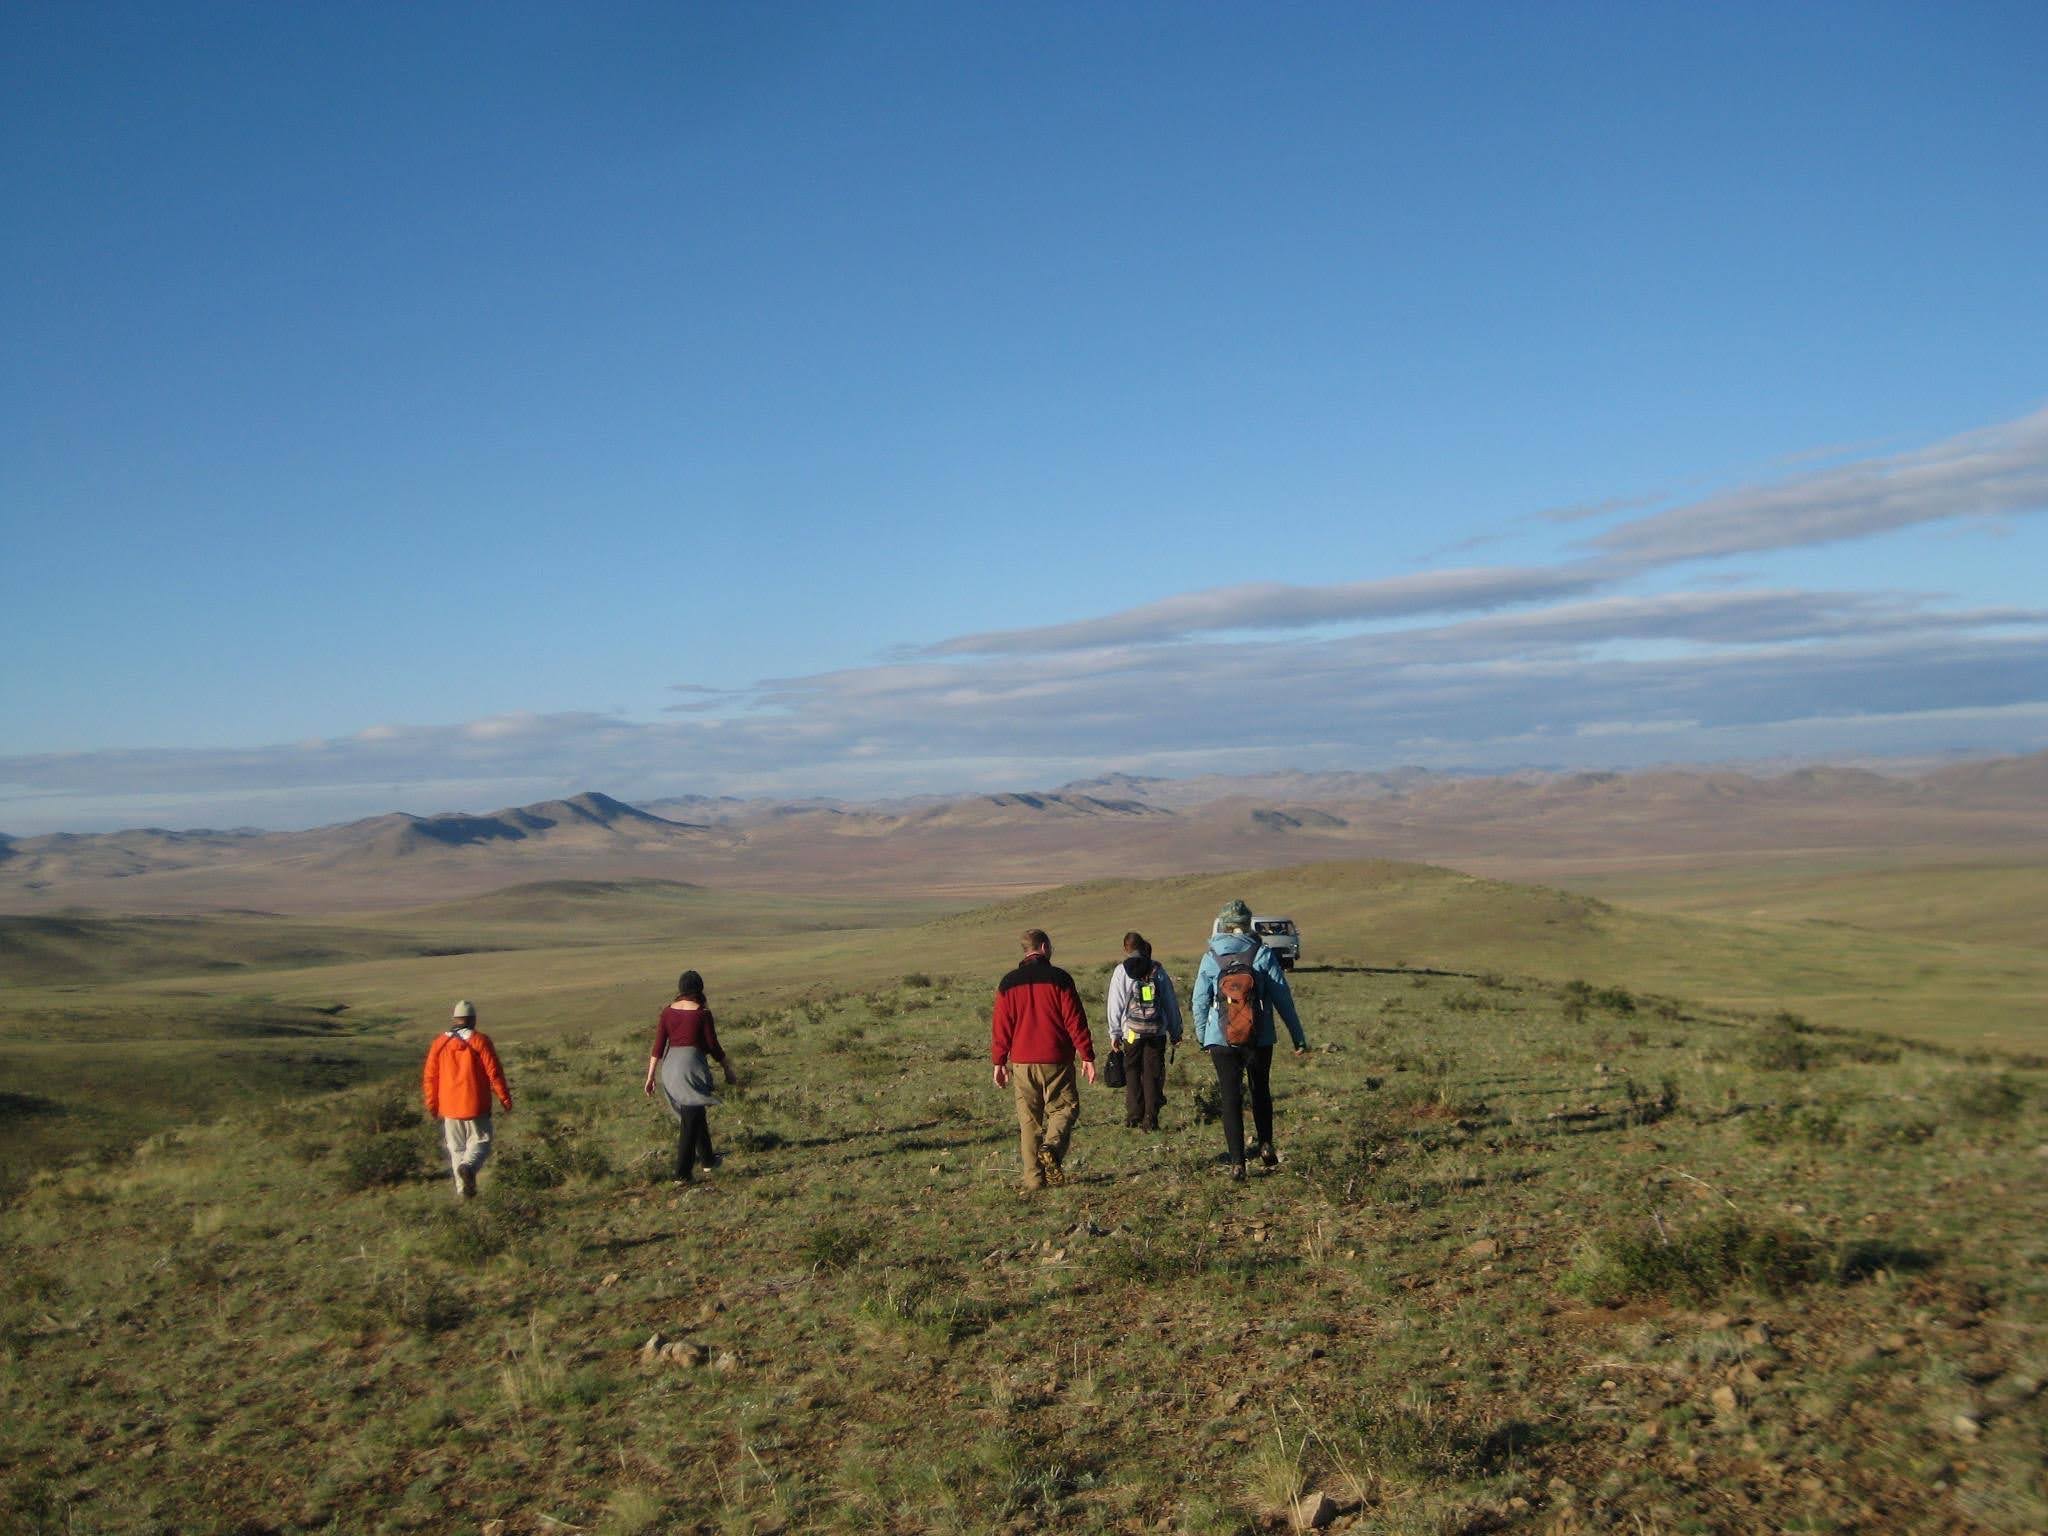 Students walking across the Mongolian landscape